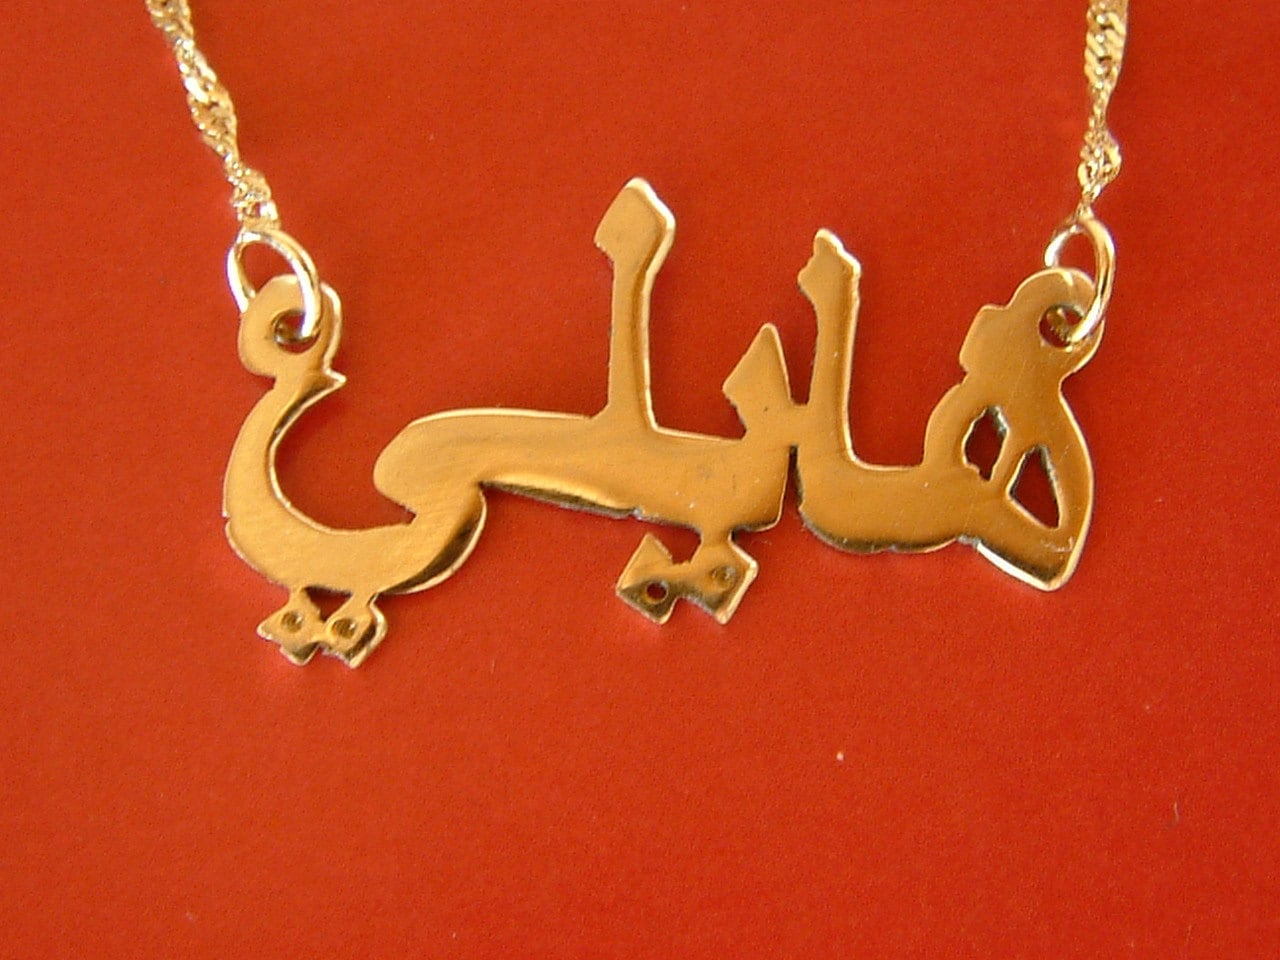 names in arabic